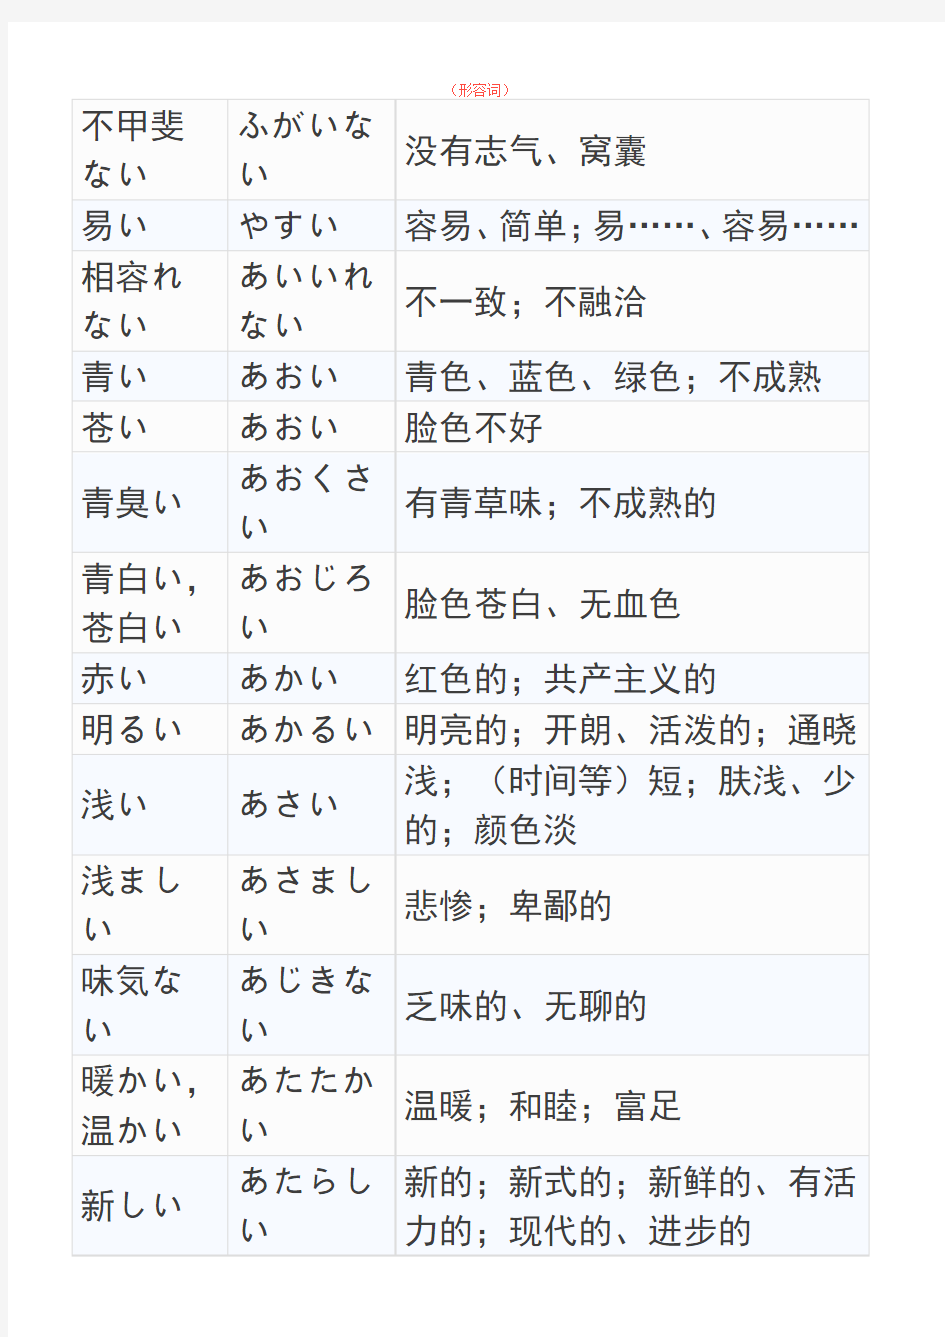 日语常用形容词整理